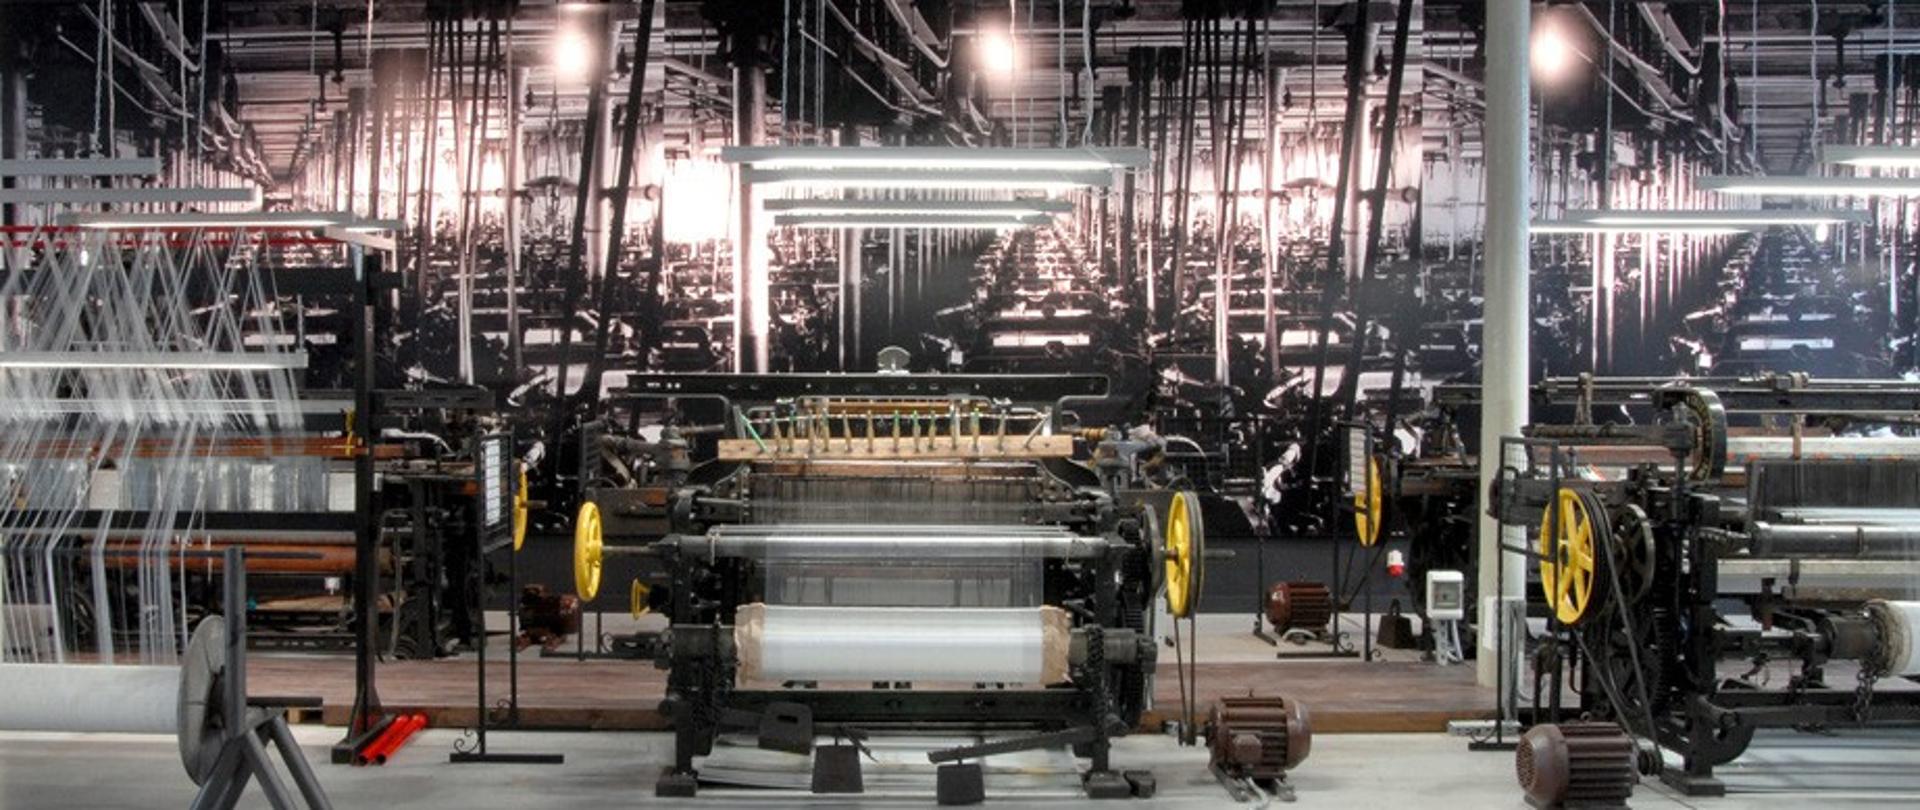 Zdjęcie przedstawia wnętrze muzeum z zabytkowymi maszynami